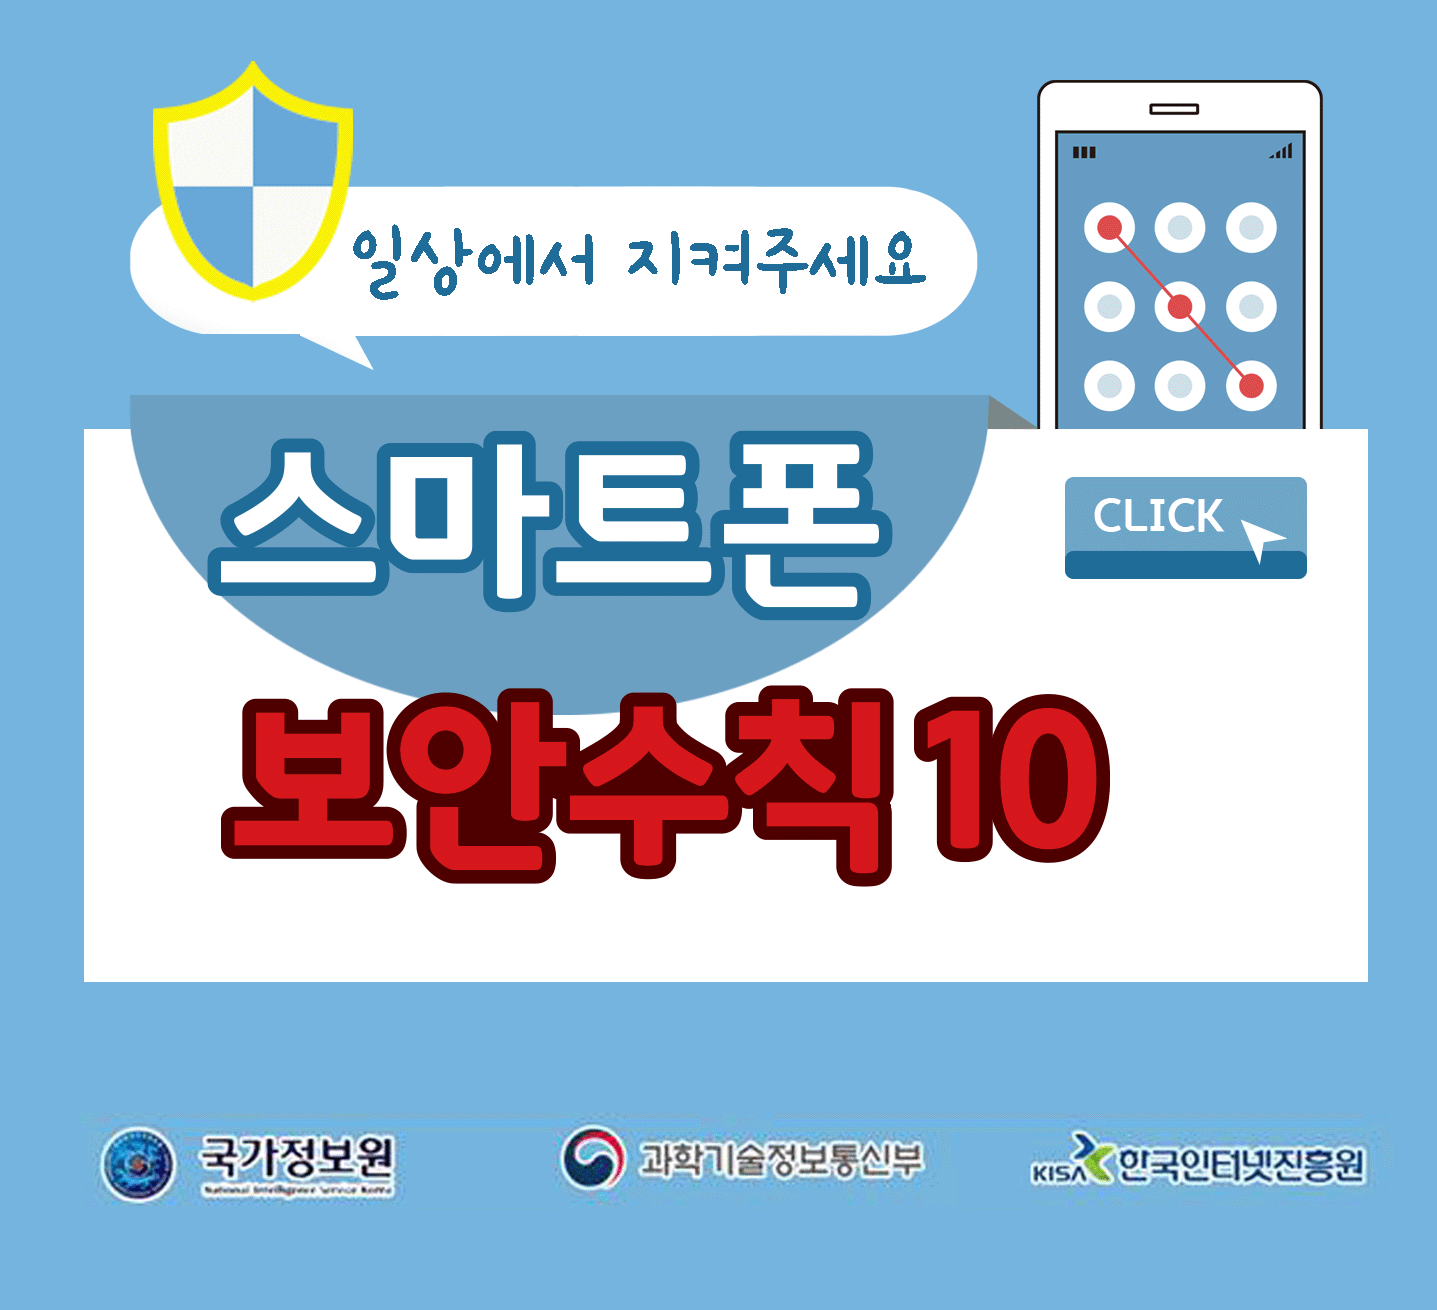 일상에서 지켜주세요
스마트폰 보안수칙 10 CLICK
국가정보원, 과학기술정보통신부, 한국인터넷진흥원;jsessionid=08D27781C07BF6B157A99862AB635147